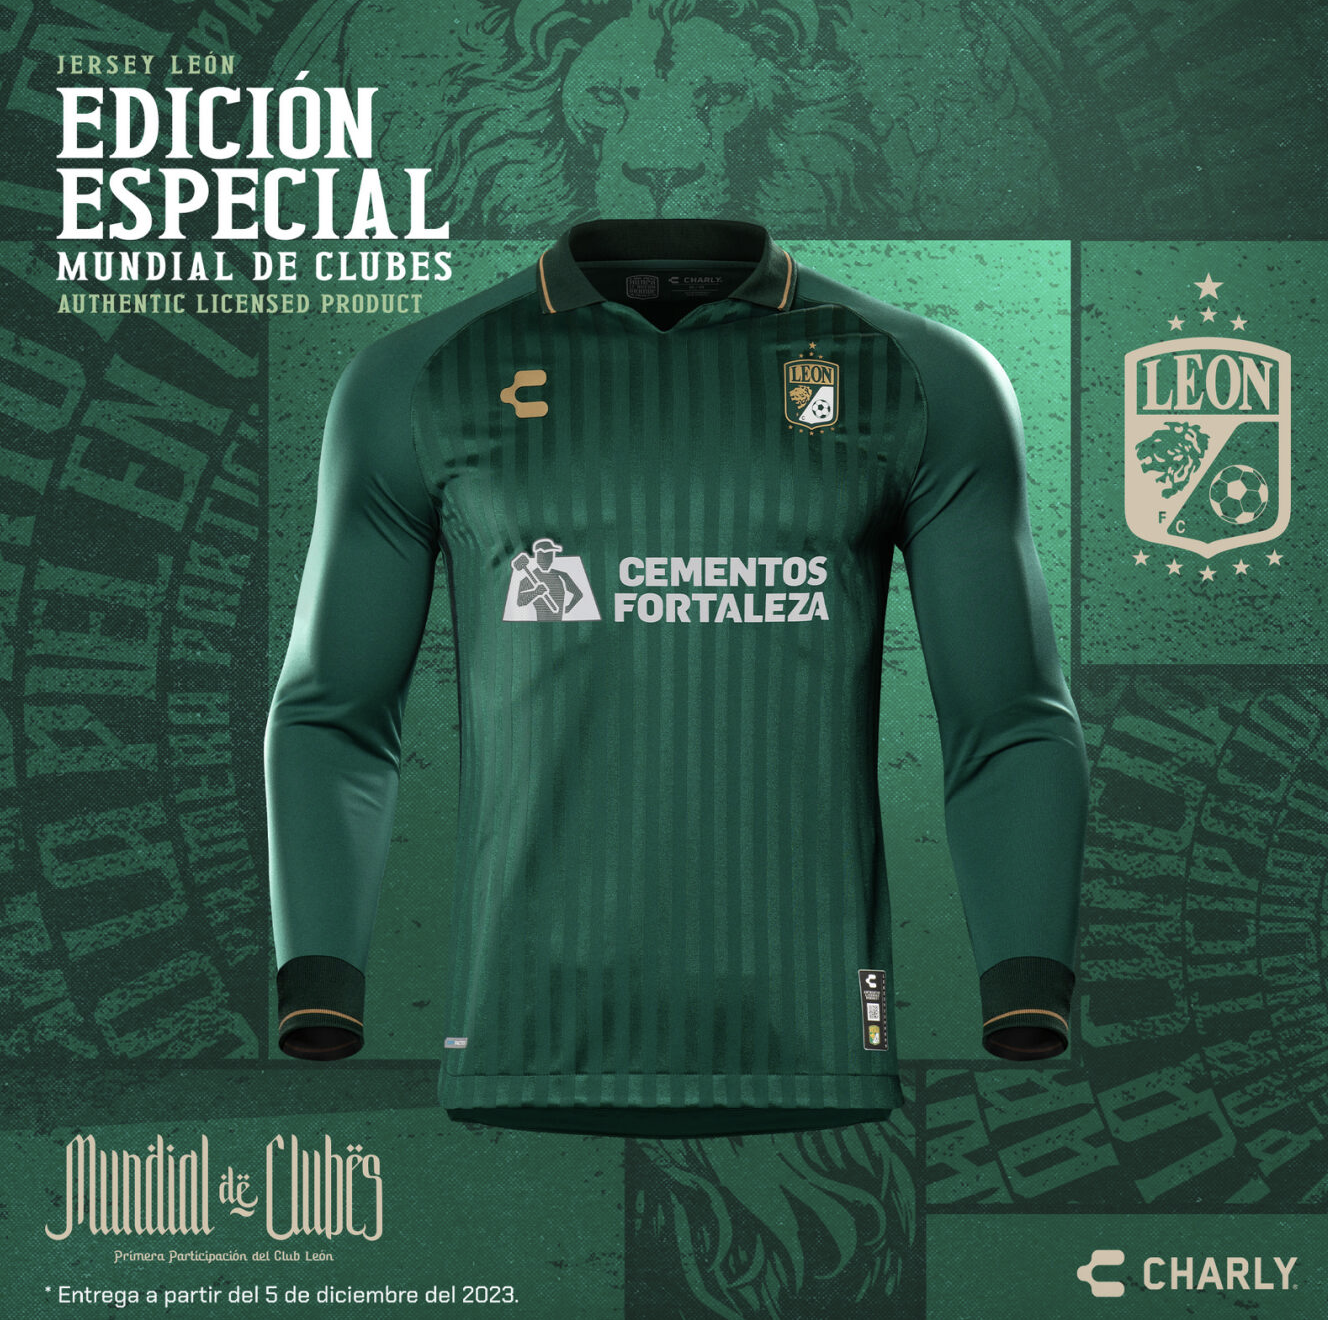 Así es la nueva camiseta conmemorativa del club mexicano León rumbo al Mundial de Clubes